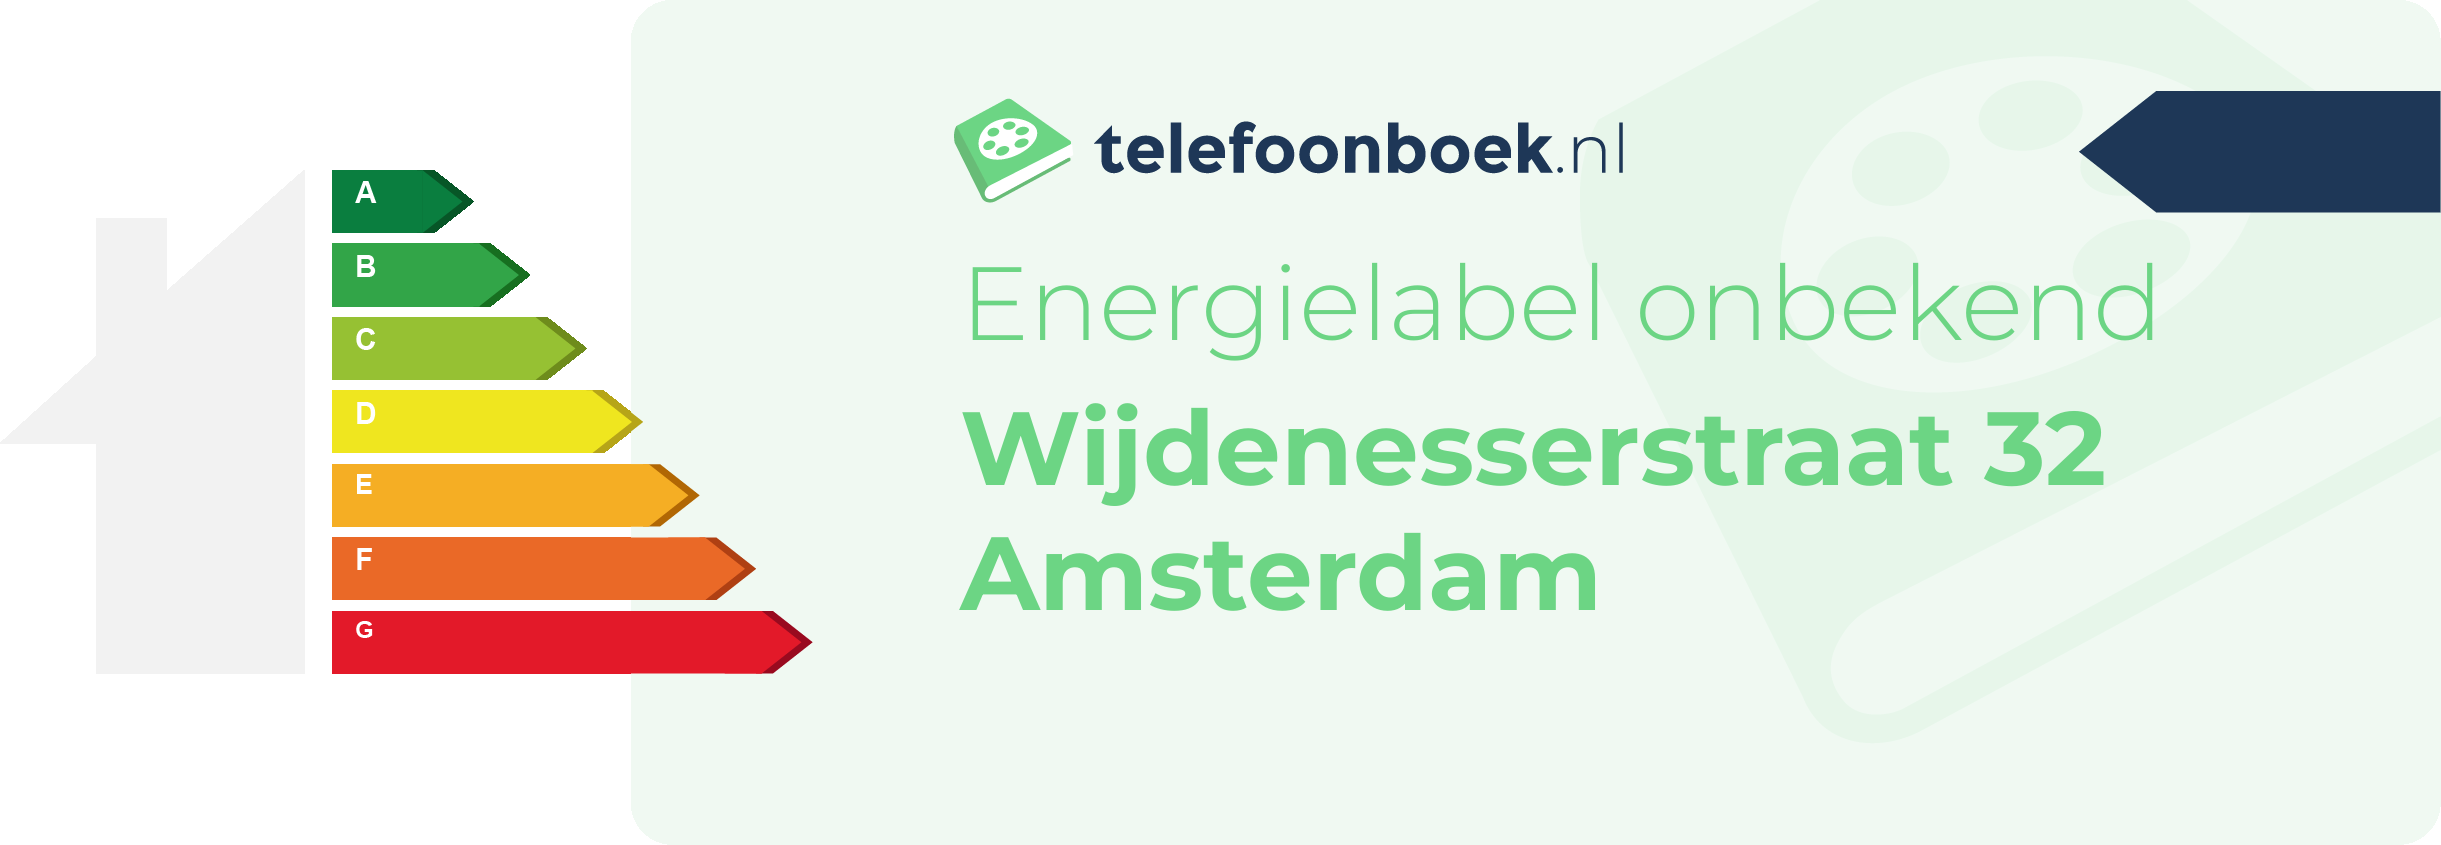 Energielabel Wijdenesserstraat 32 Amsterdam